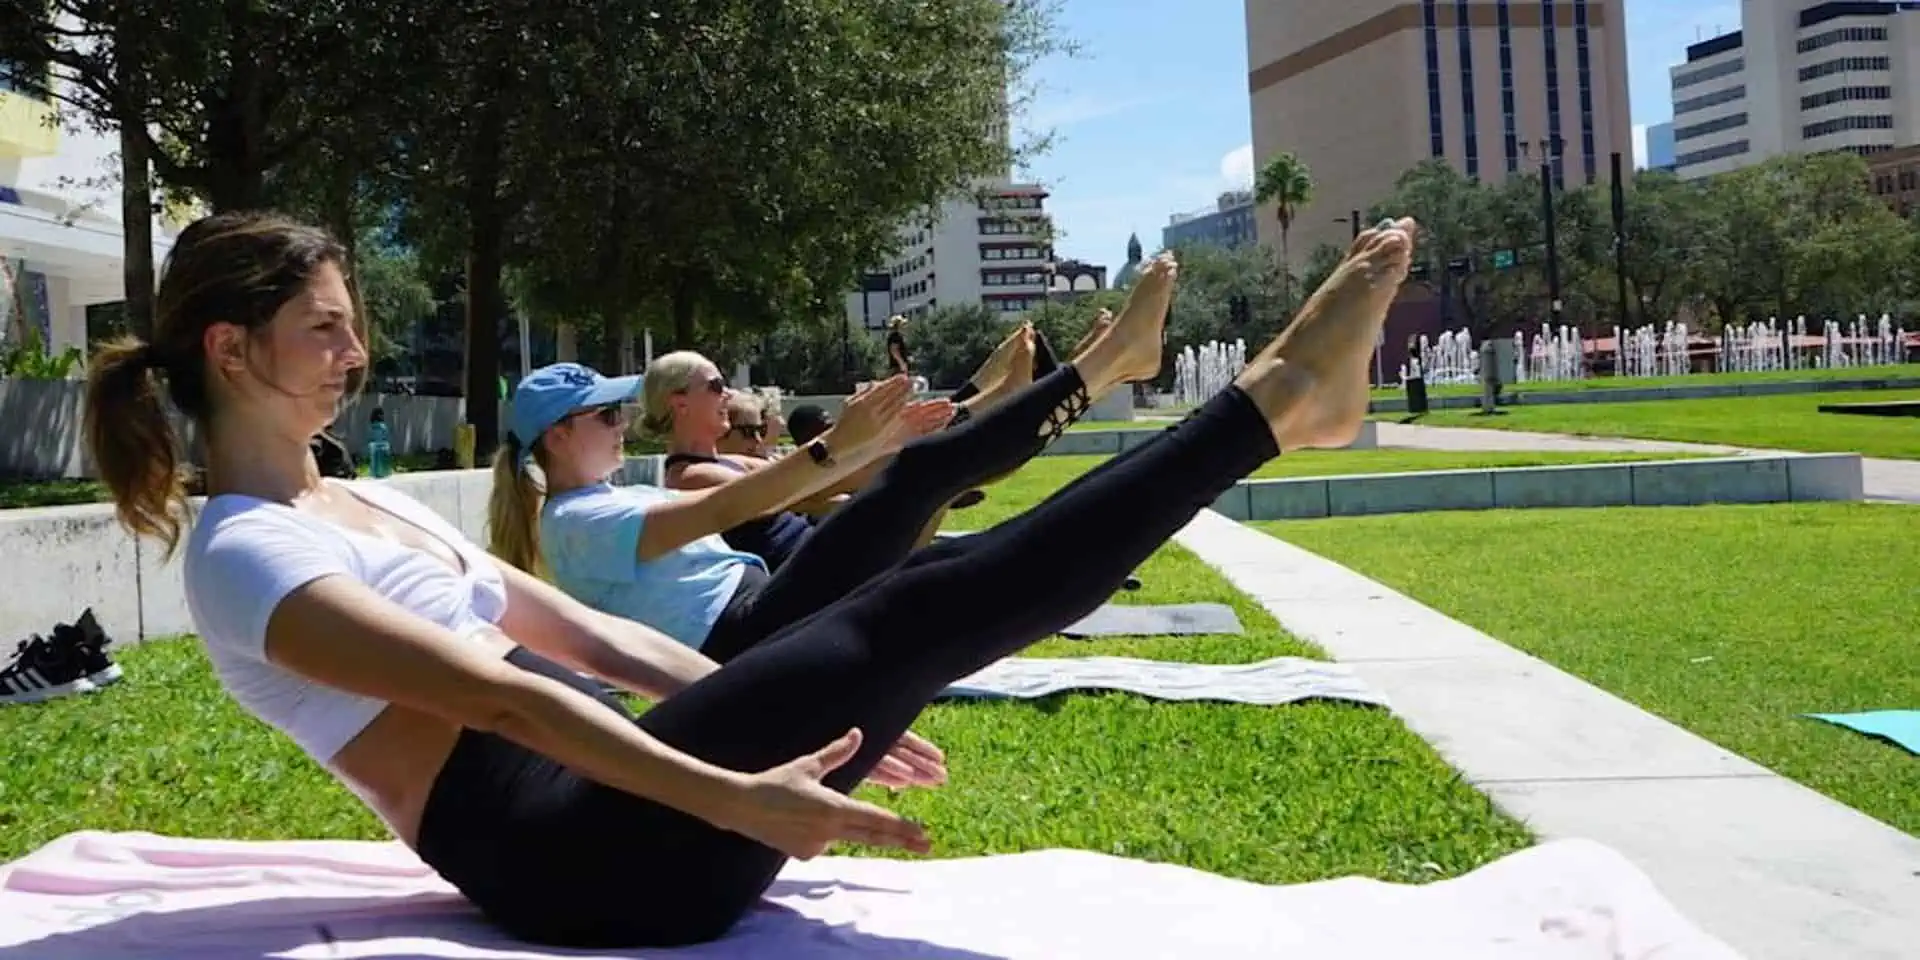 women in the park doing pilates